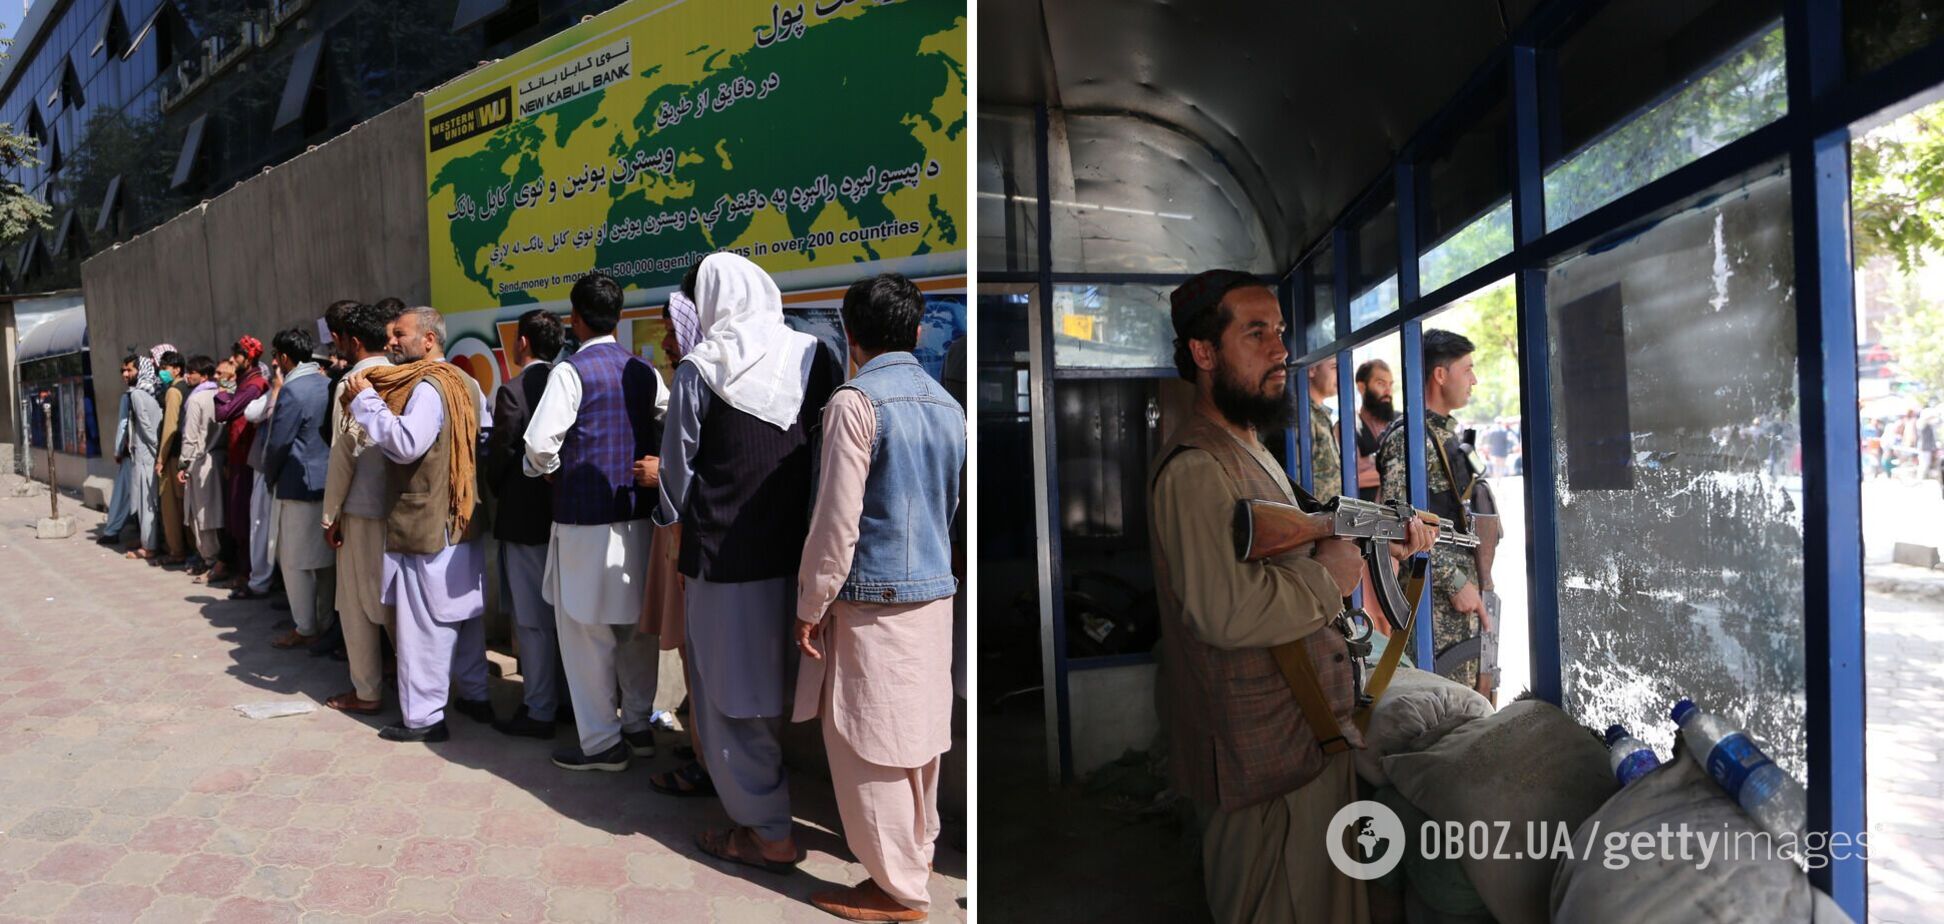 Банки закриті, у людей немає грошей: Афганістан опинився на межі катастрофи після захоплення влади талібами. Фото